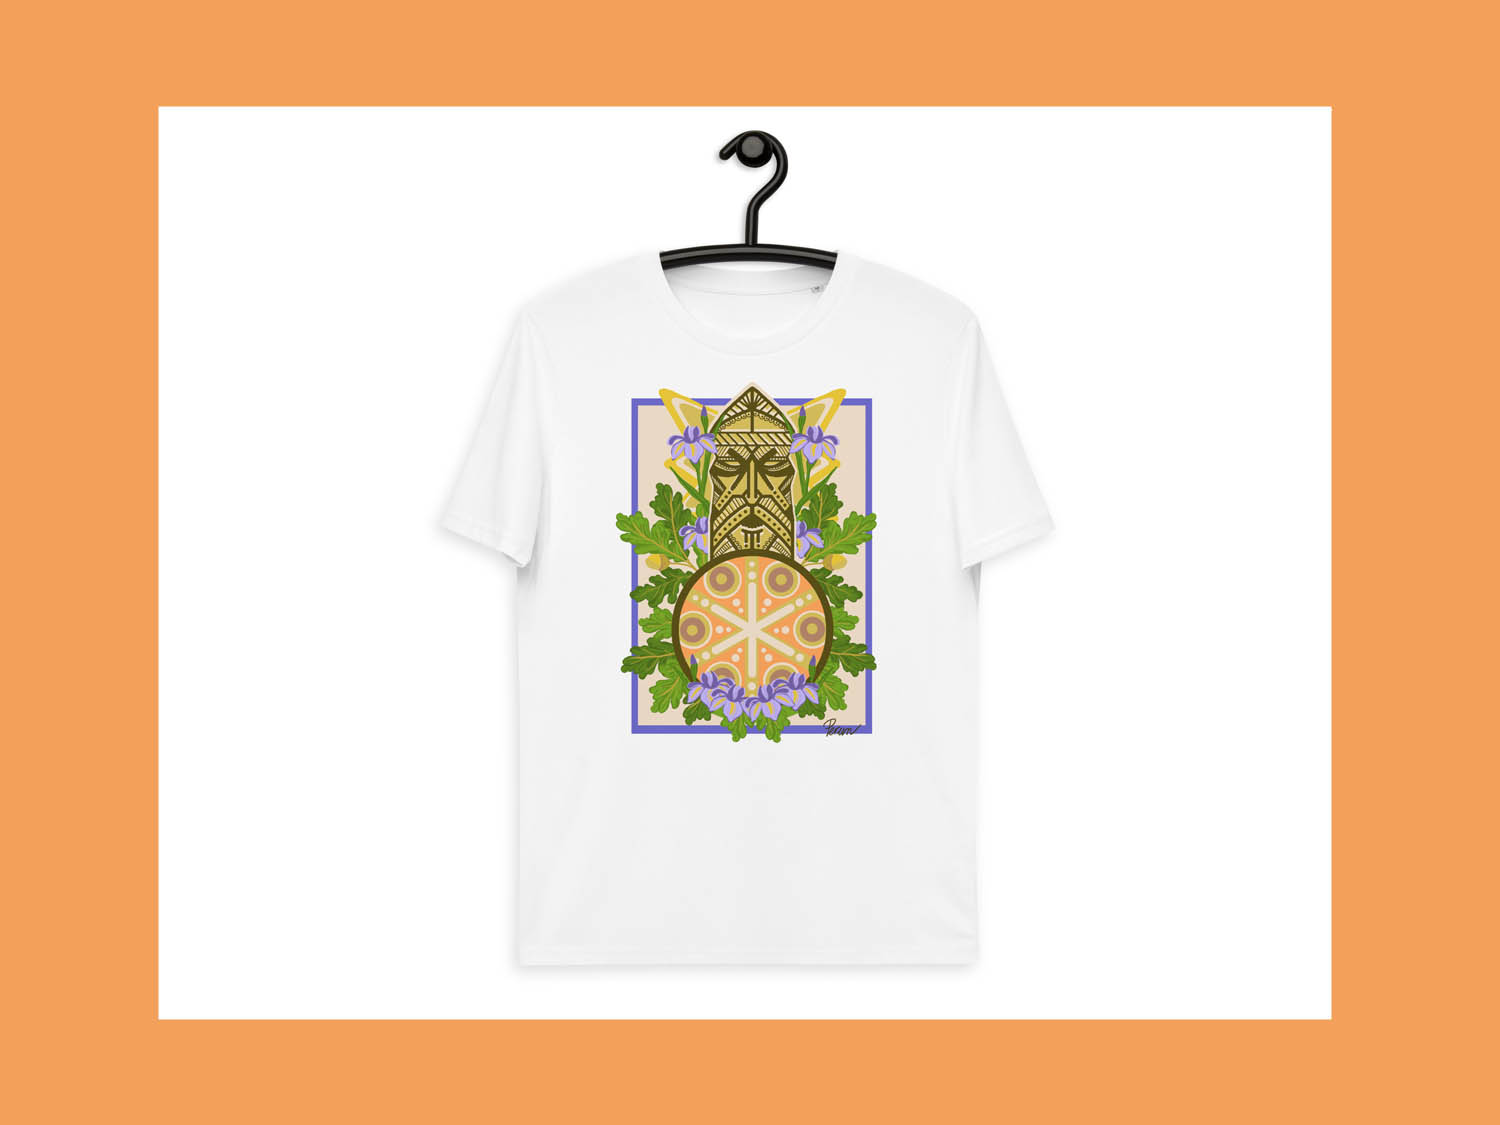 jkh slavic mythology unisex organic cotton t-shirt